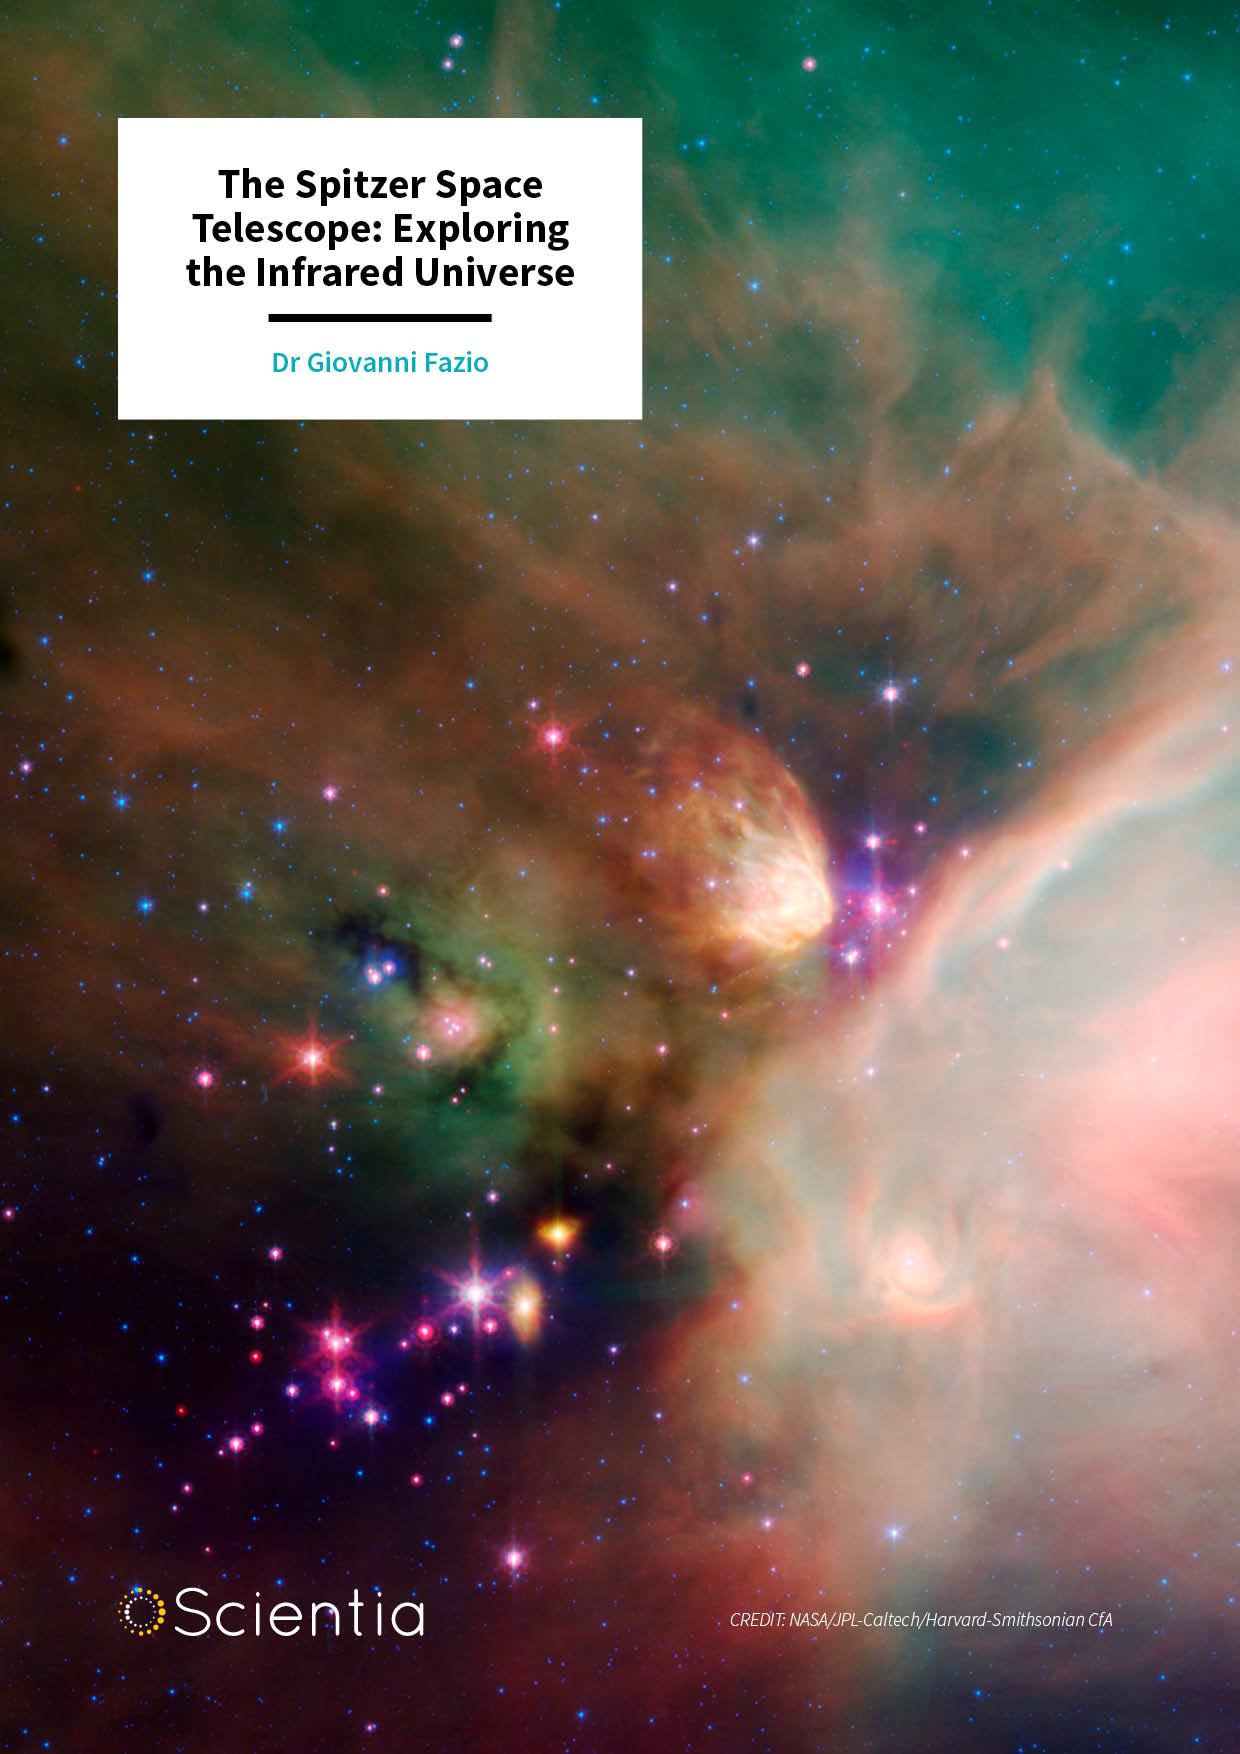 Dr Giovanni Fazio – The Spitzer Space Telescope: Exploring the Infrared Universe